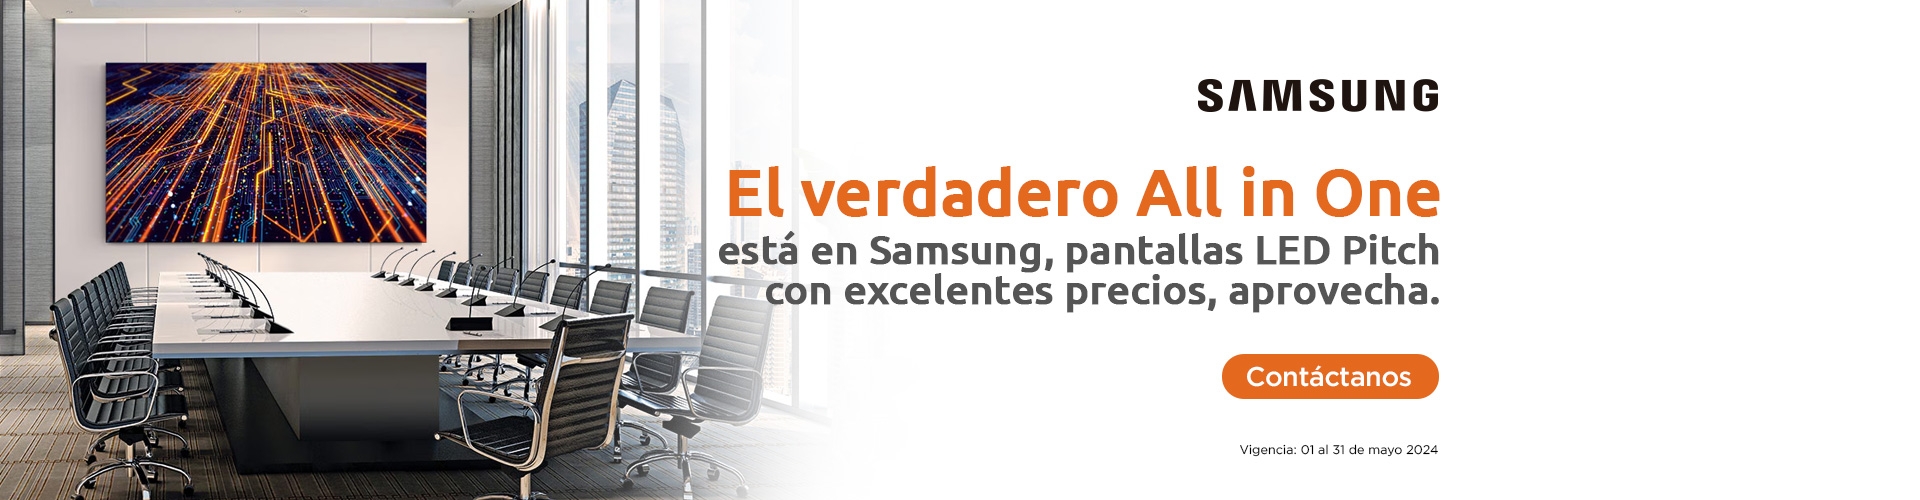 Samsung promoción exclusiva